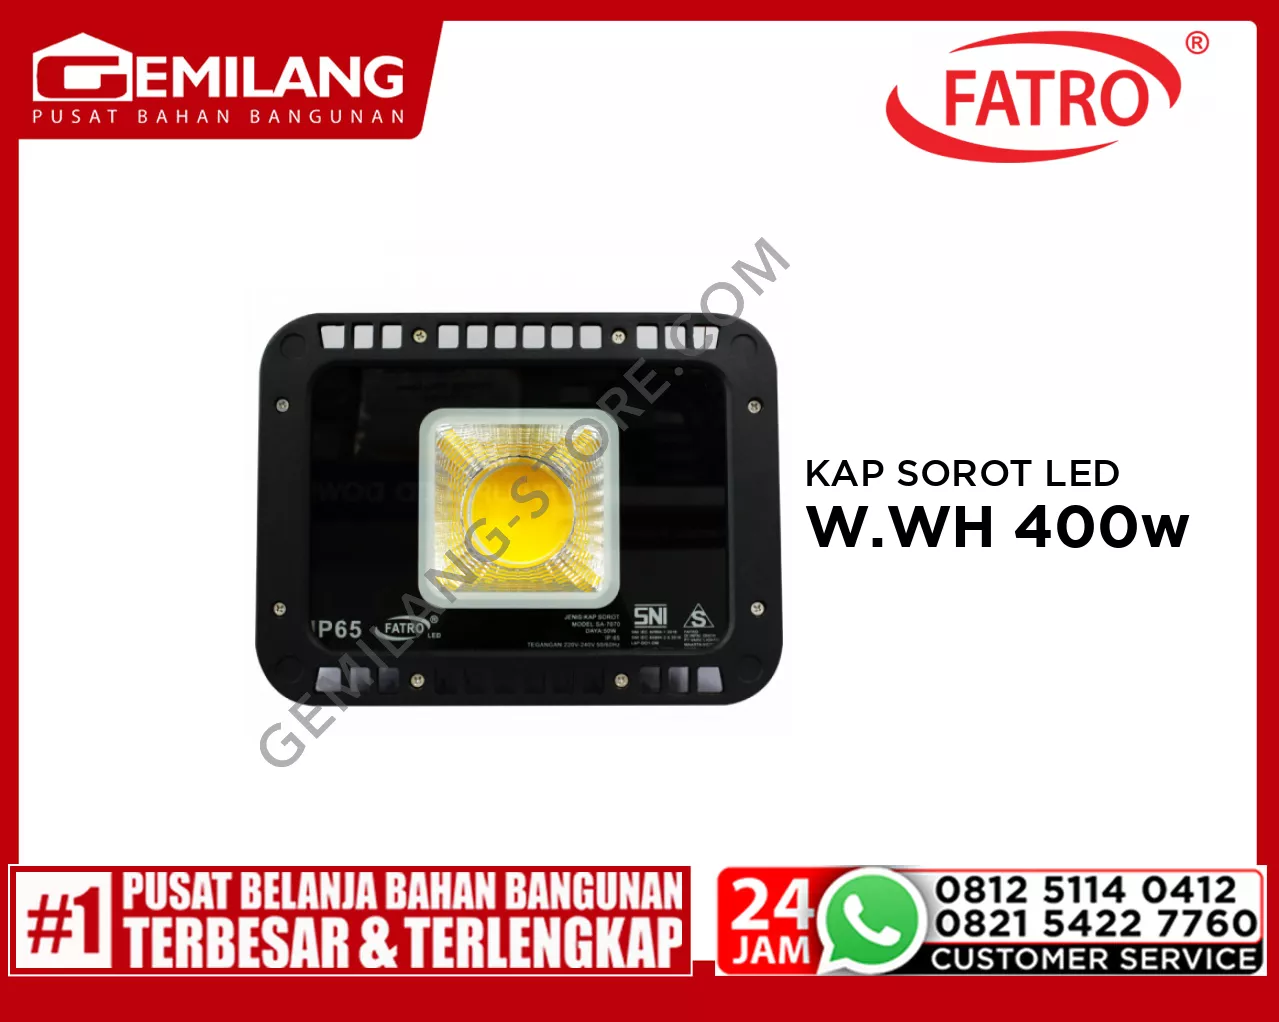 FATRO KAP SOROT LED SA 7070 W.WH 400w